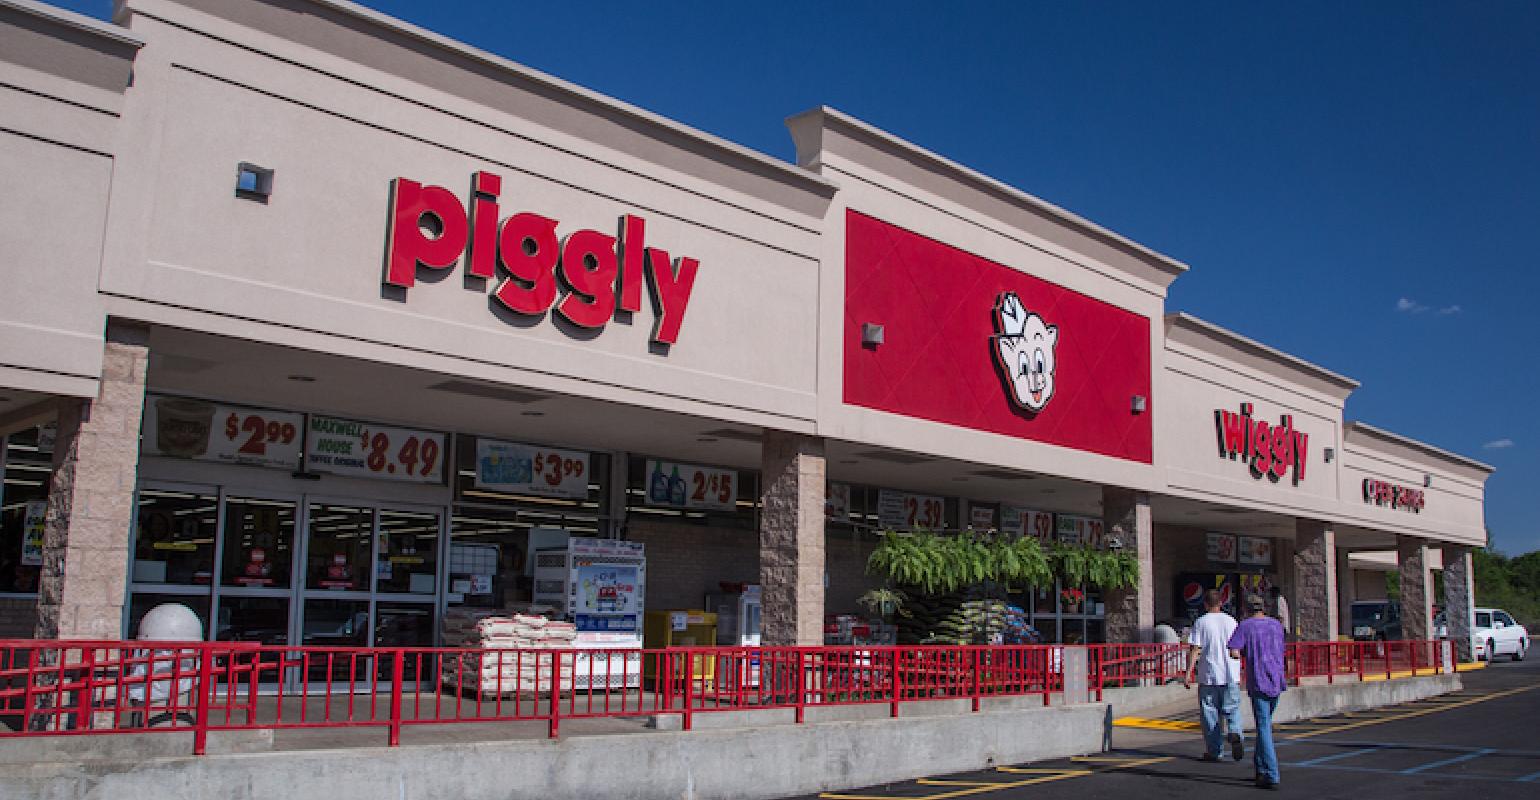 piggly wiggly supermarket jacksonville florida